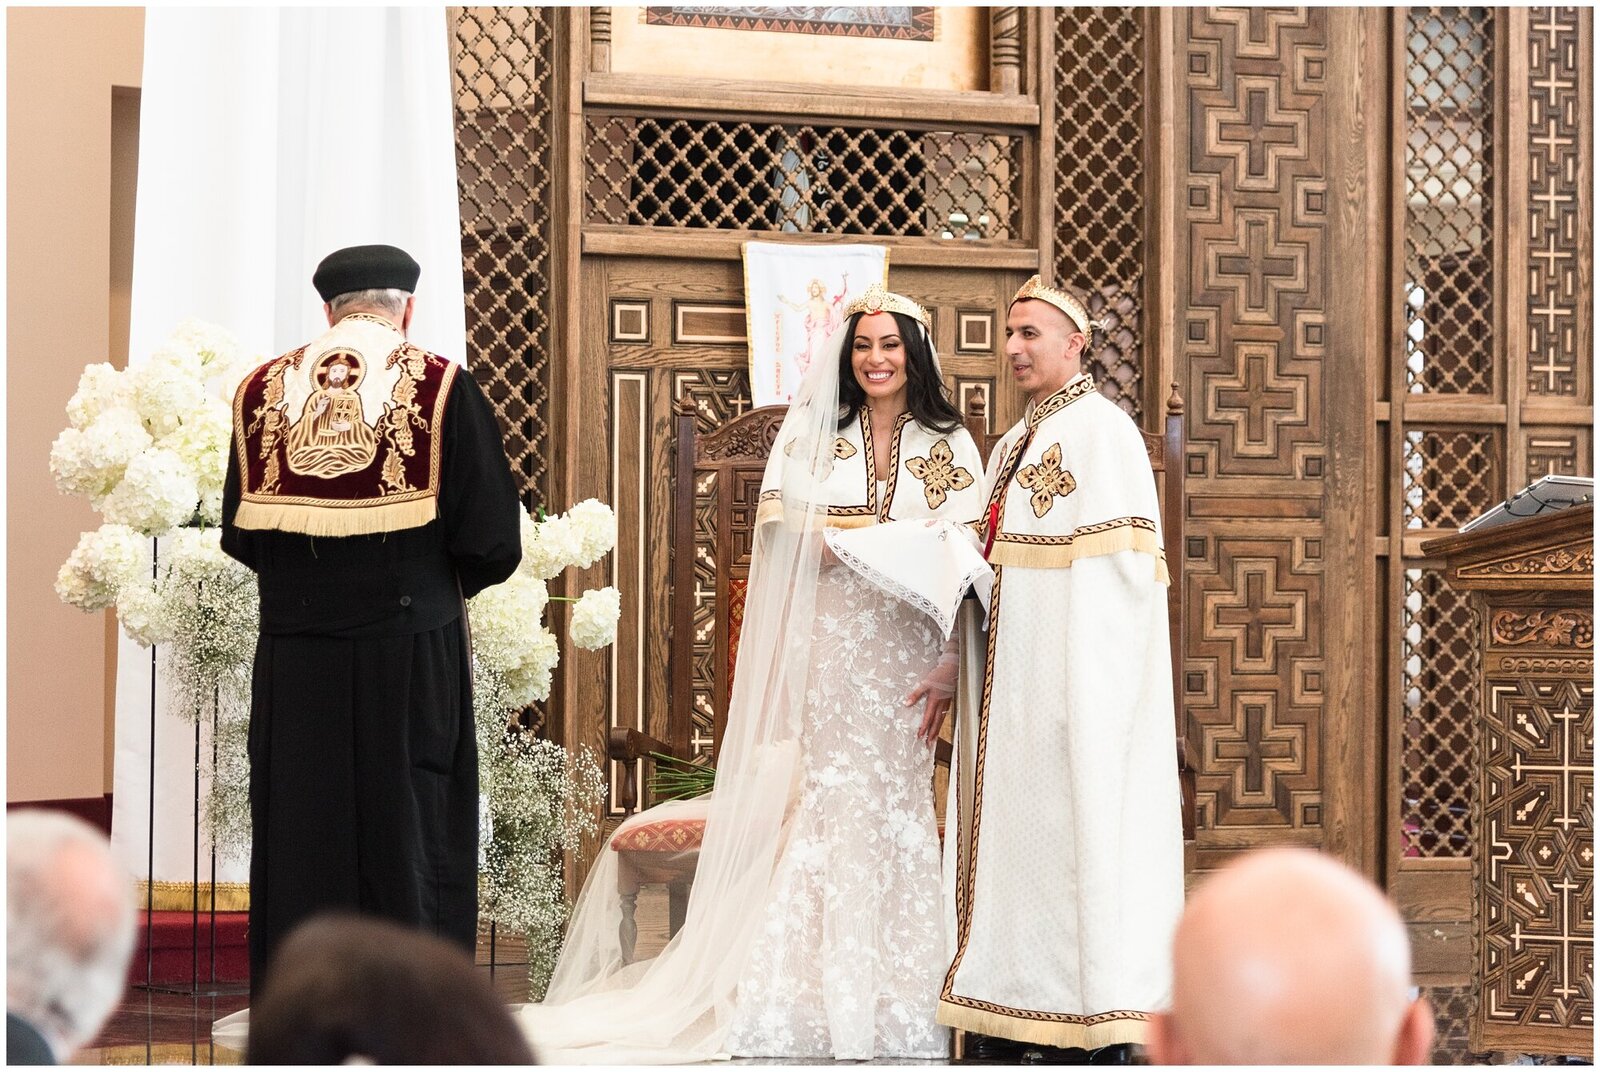 Egyptian wedding ceremony in Toronto